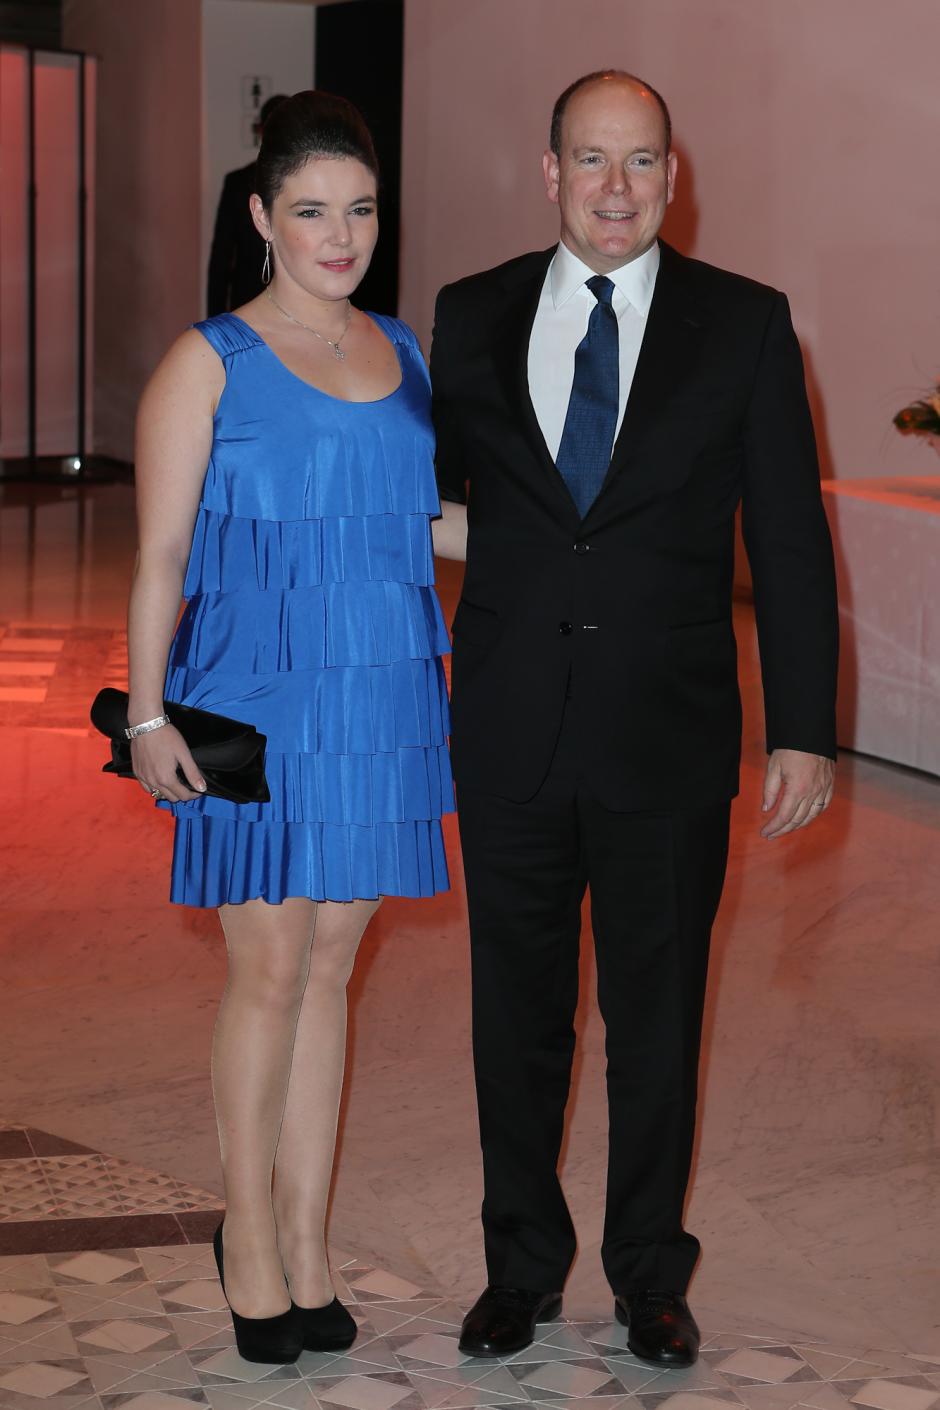 Melanie-Antoinette Costello de Massy and Prince Albert II attending the Monte-Carlo Rolex Masters in Monaco
19/04/2013